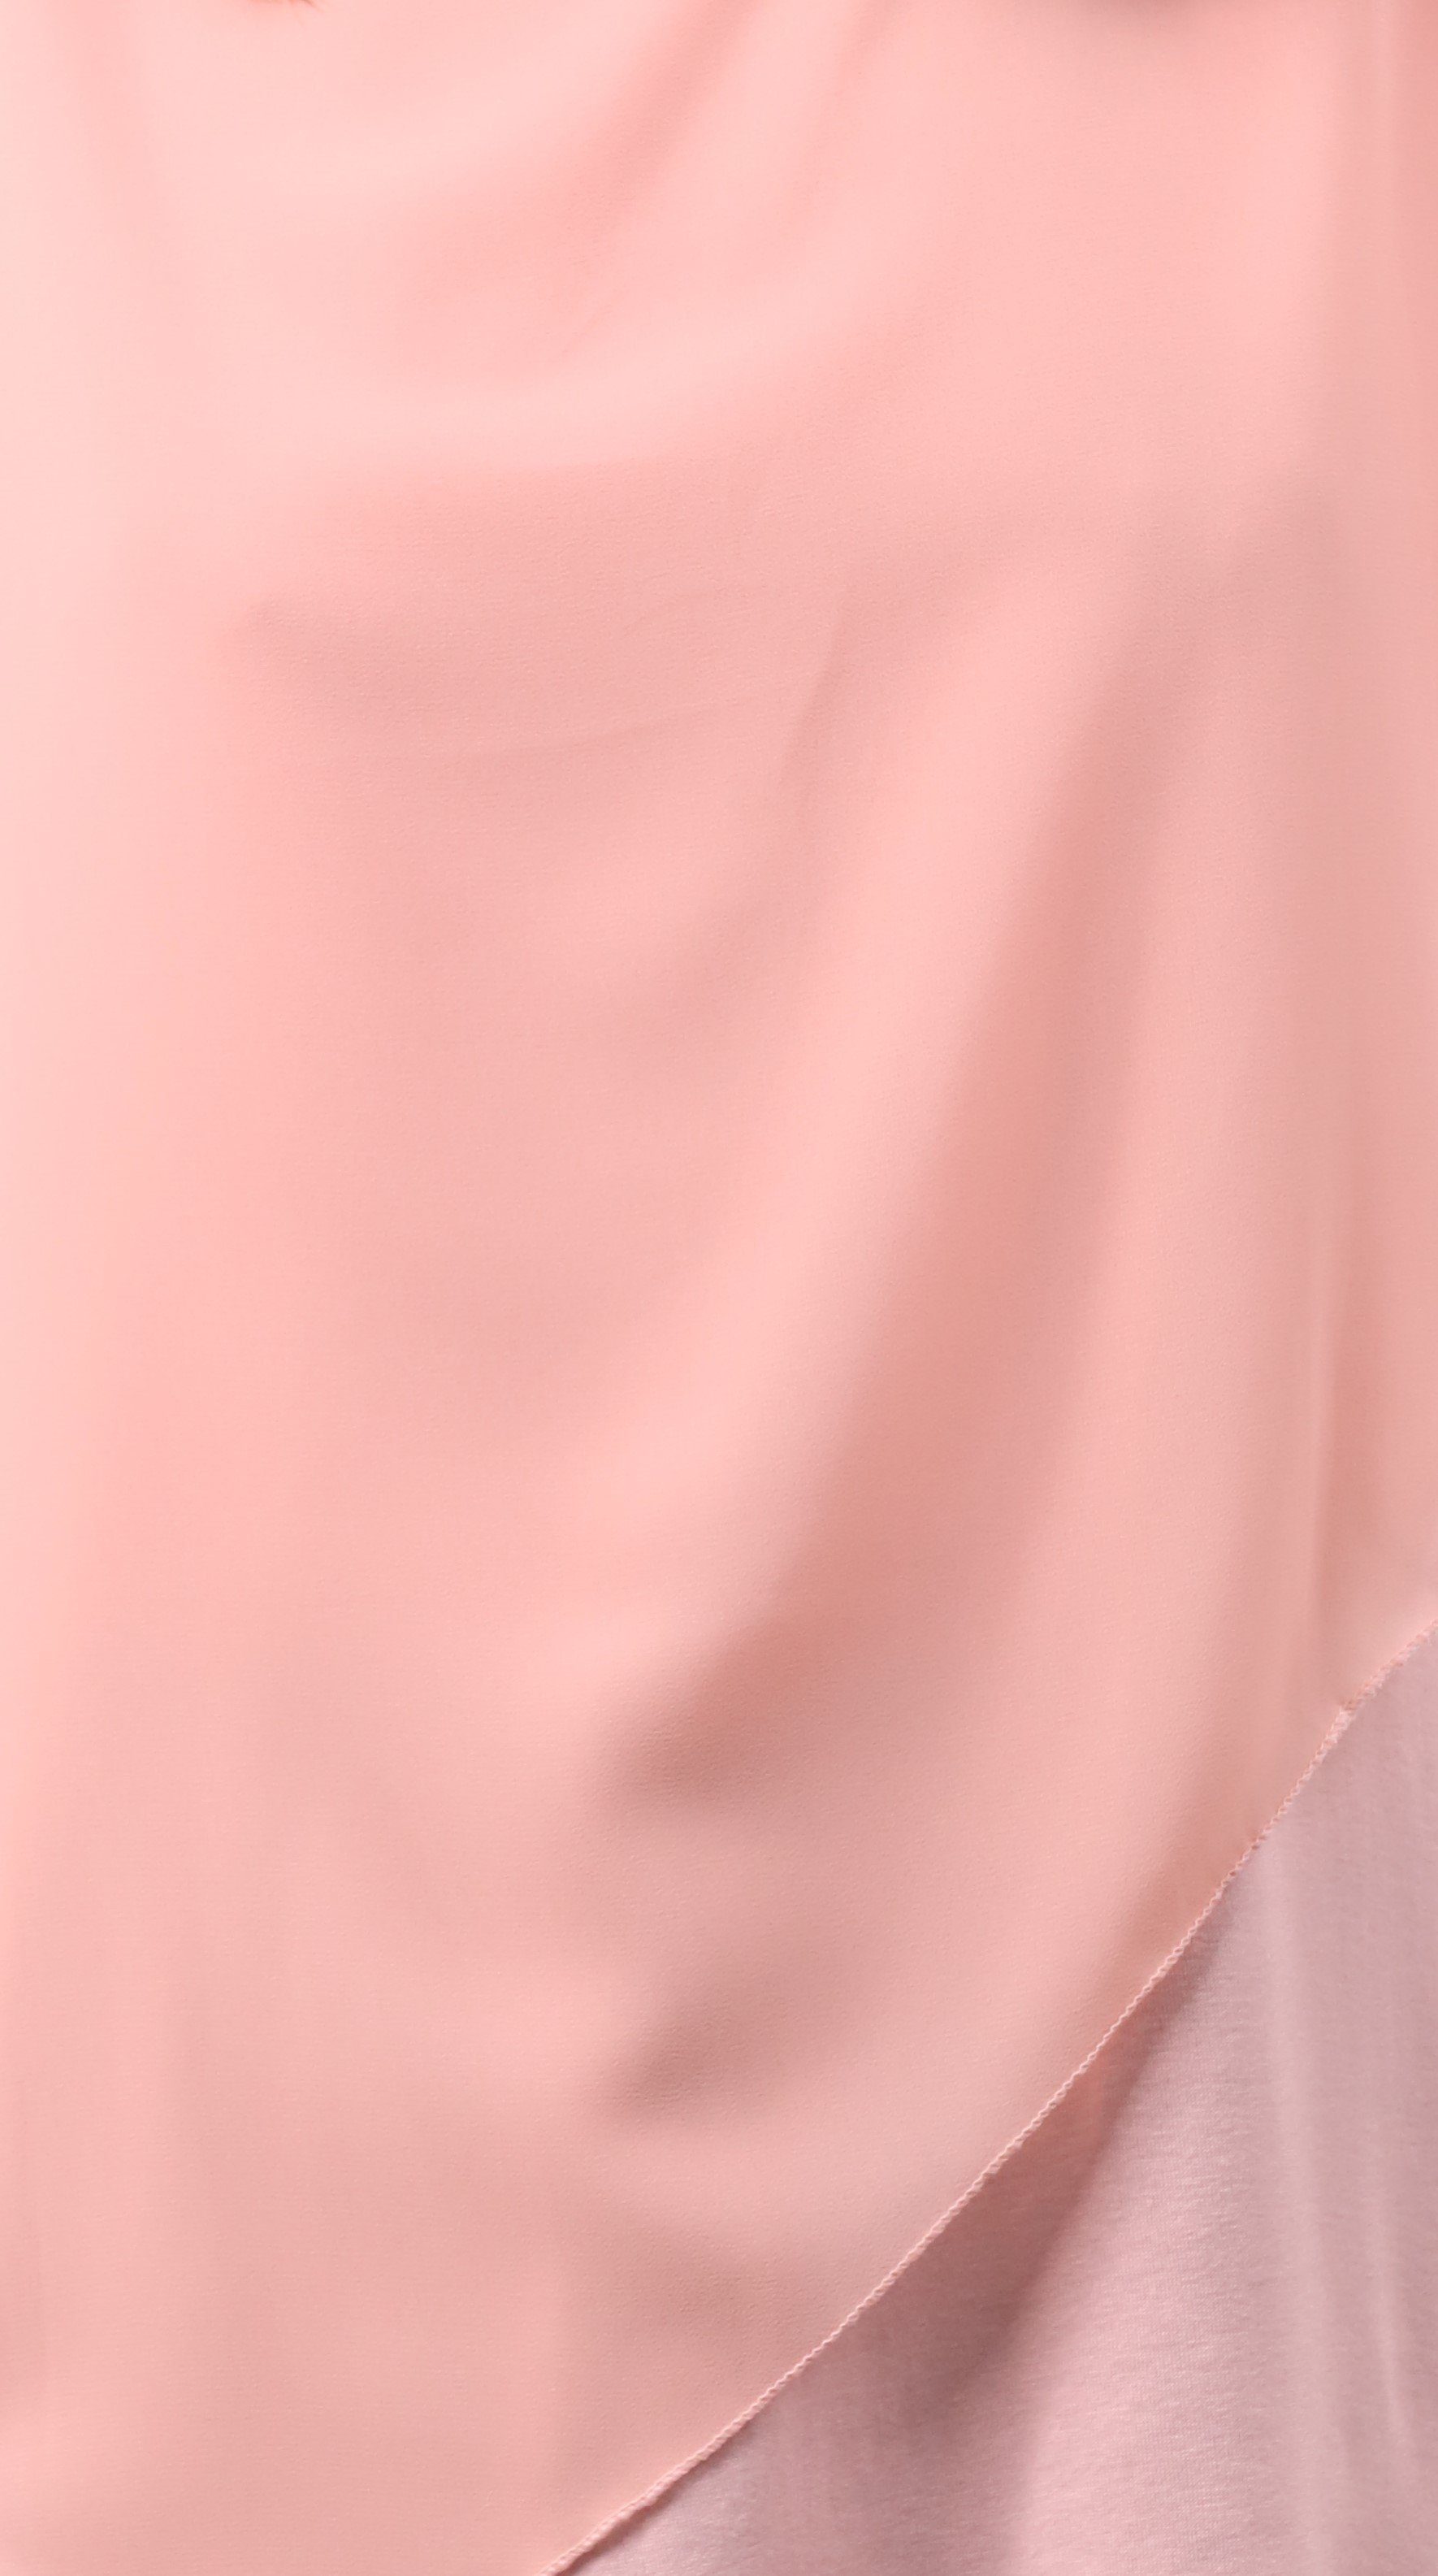 rosa Einheitsgröße Blusenshirt malito geschnitten more Schlupfbluse Chiffonbluse than asymmetrisch 10732 fashion